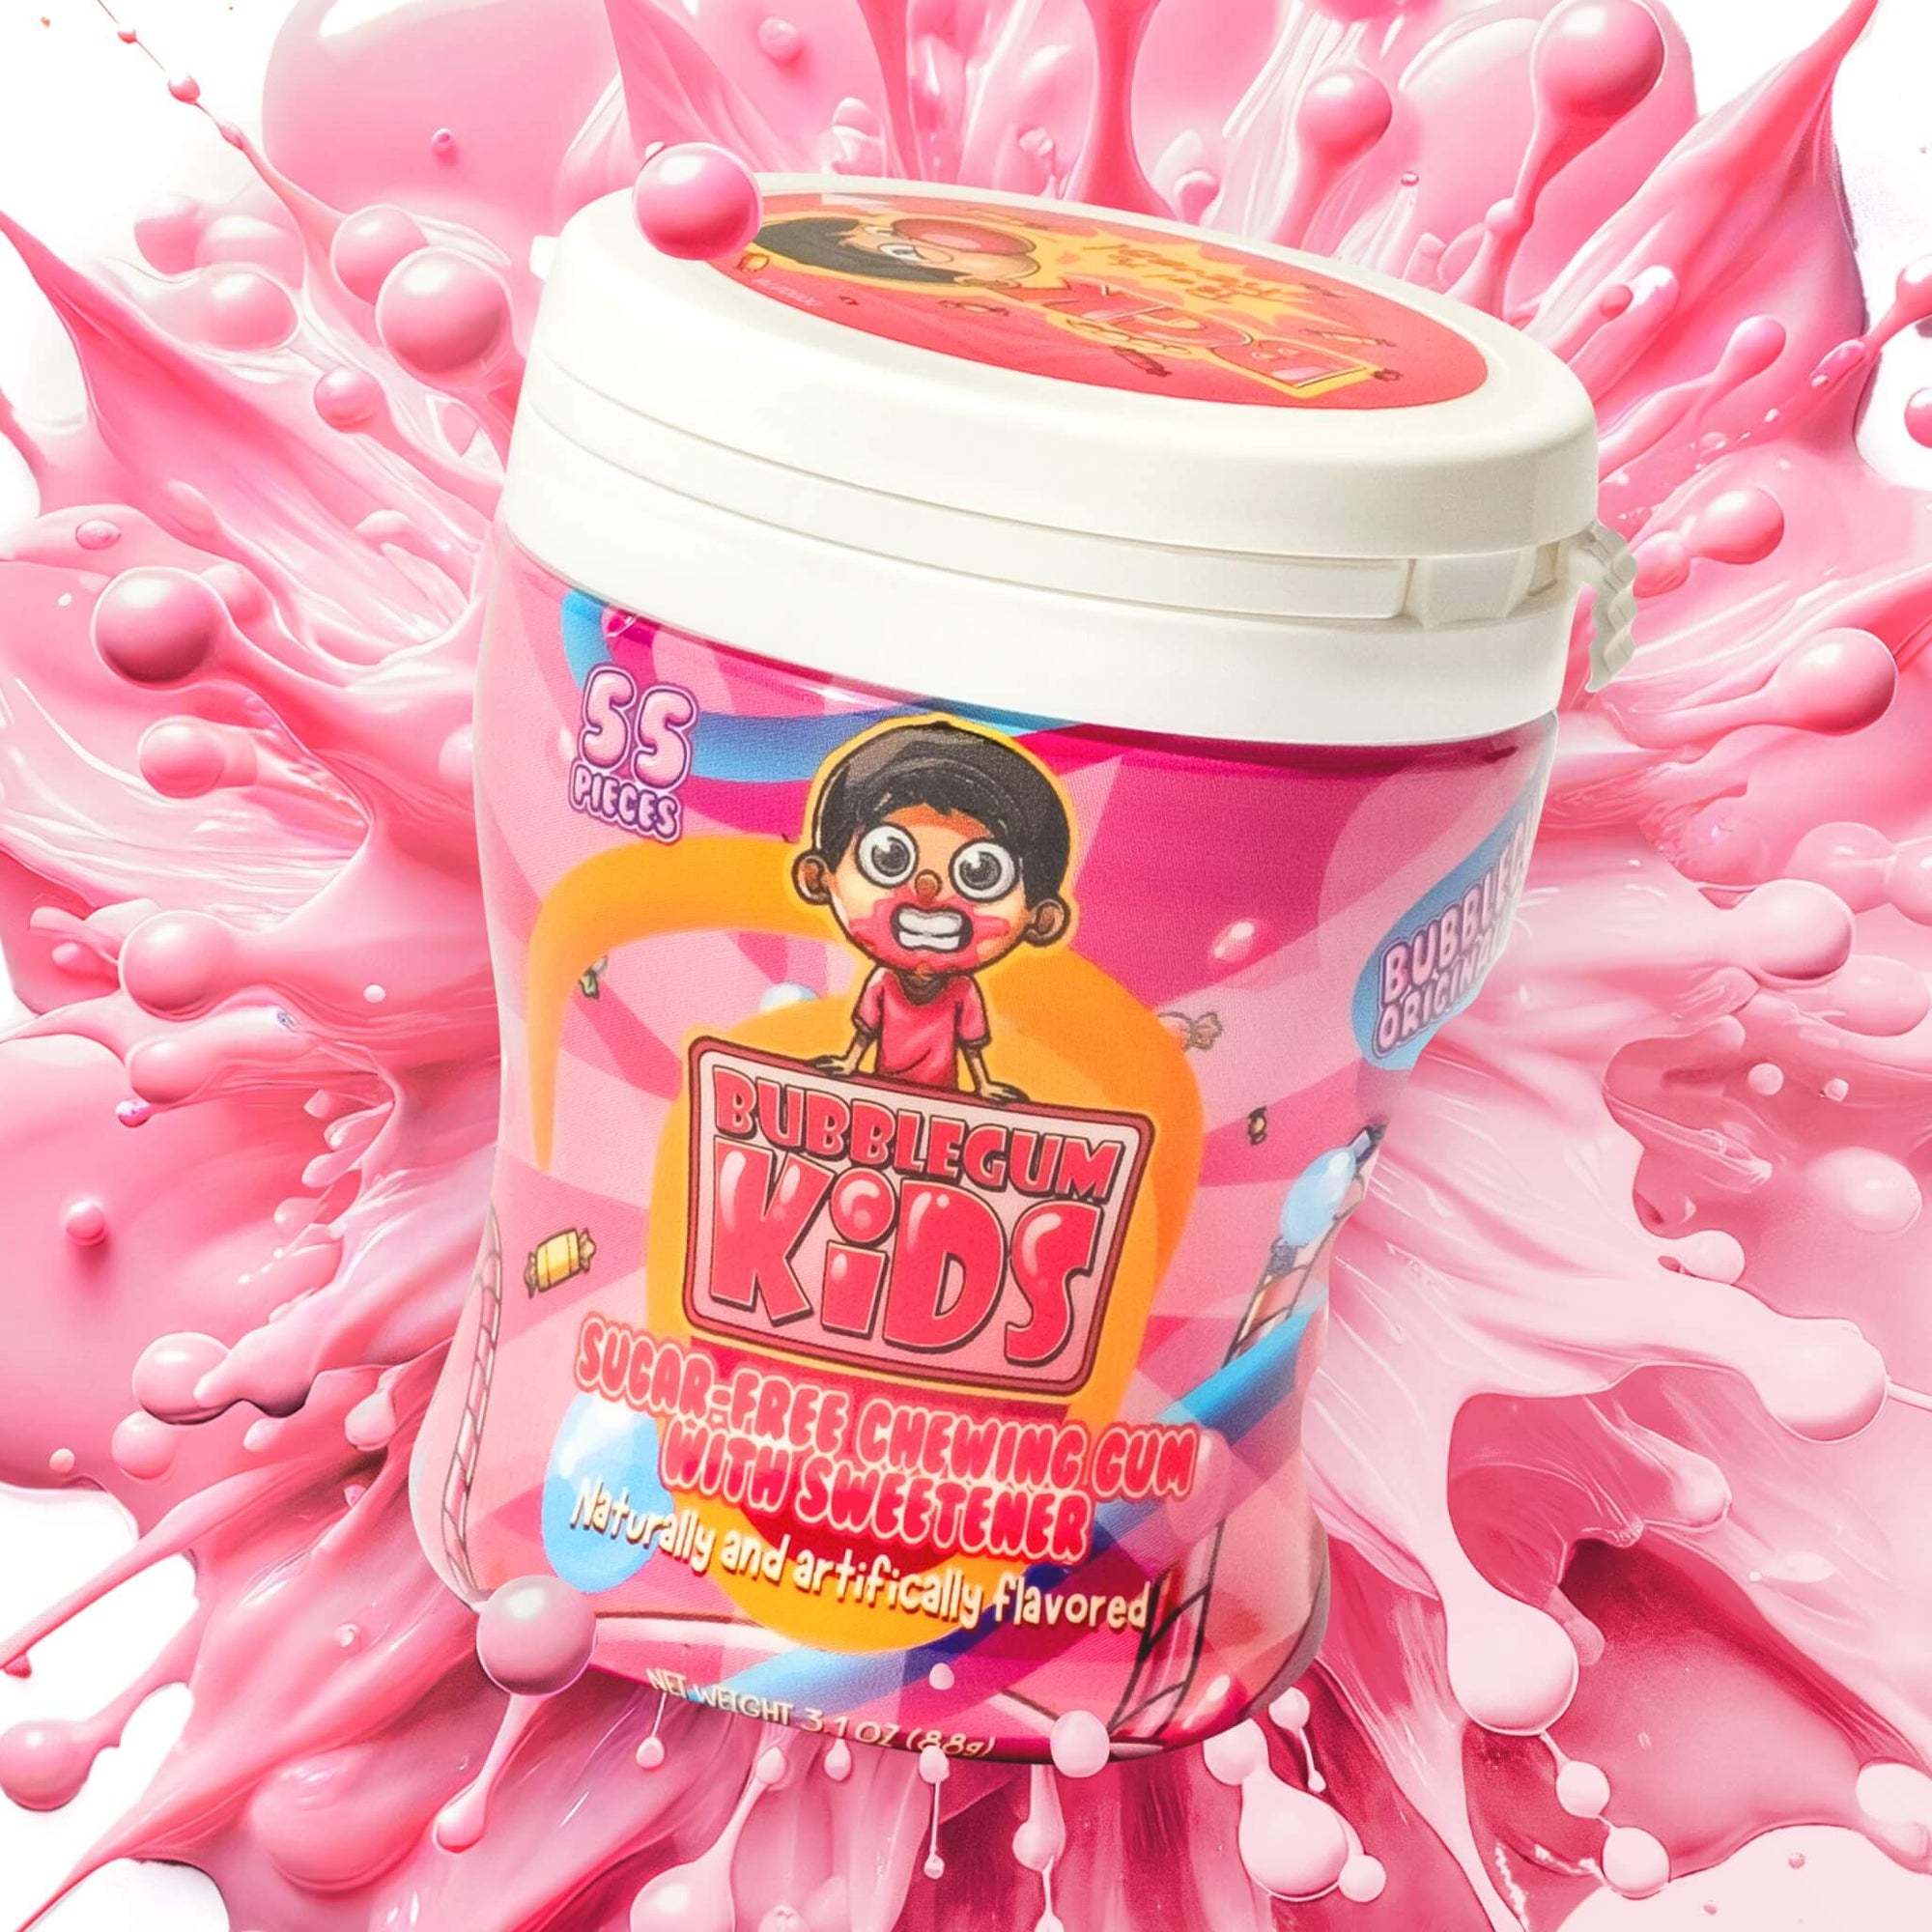 Bubblegum’s Original Blend with pink bubblegum background